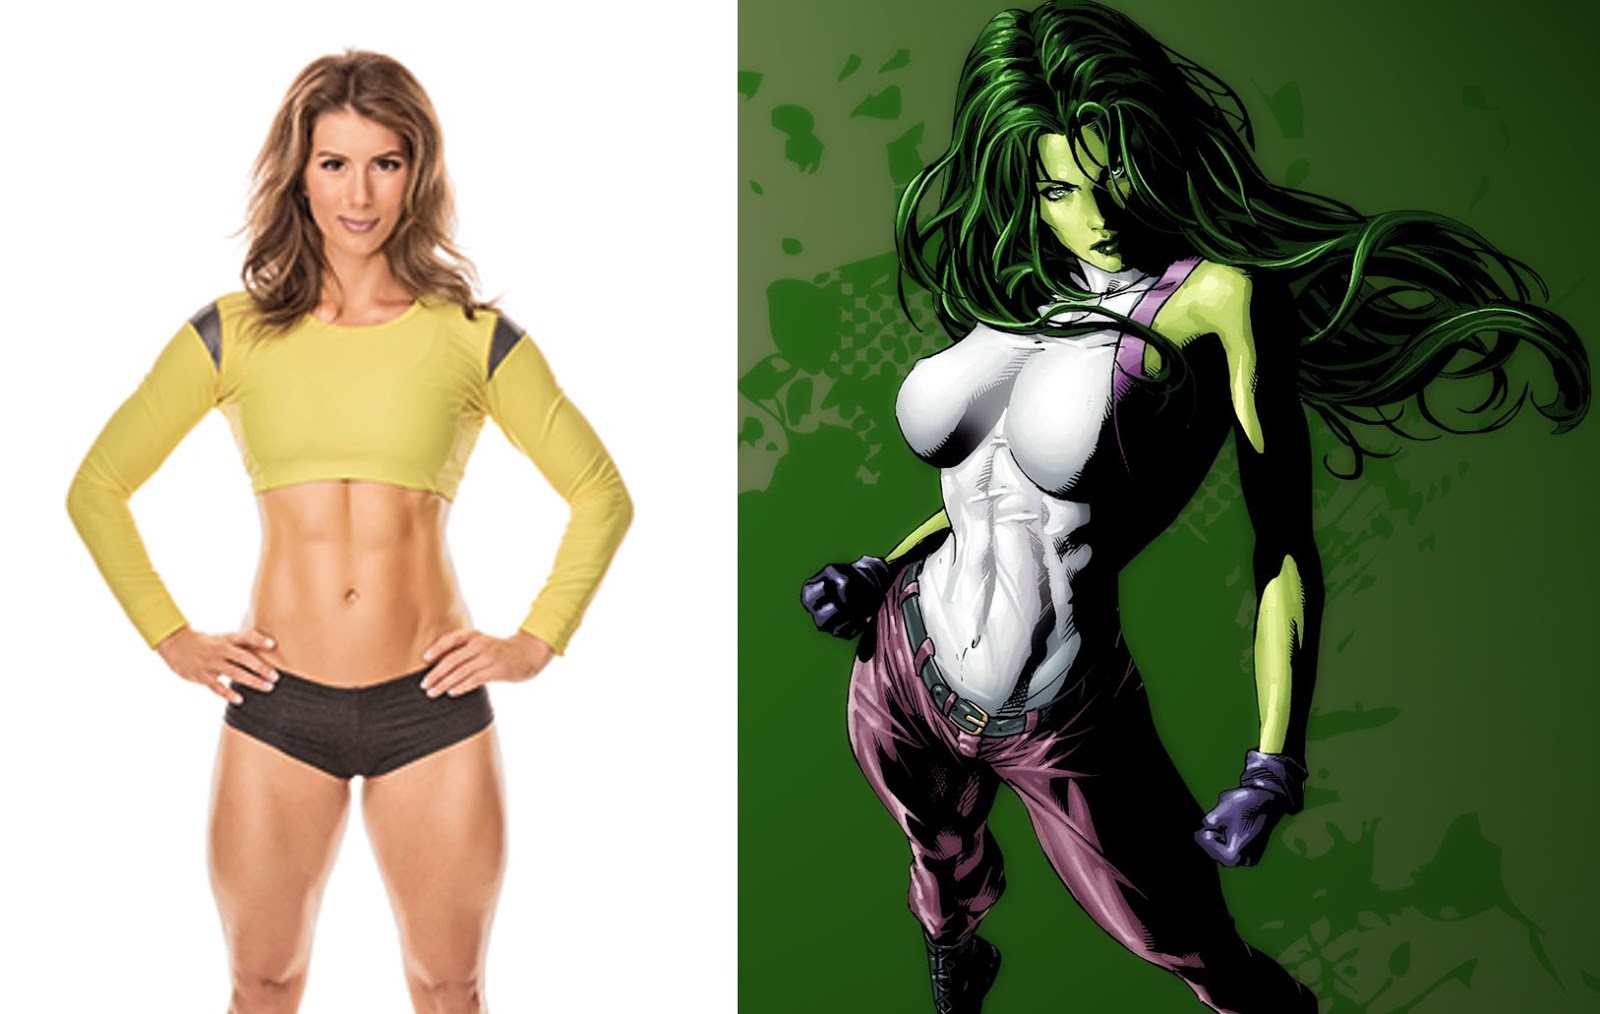 FAN CASTING: Jen Widerstrom as She-Hulk.